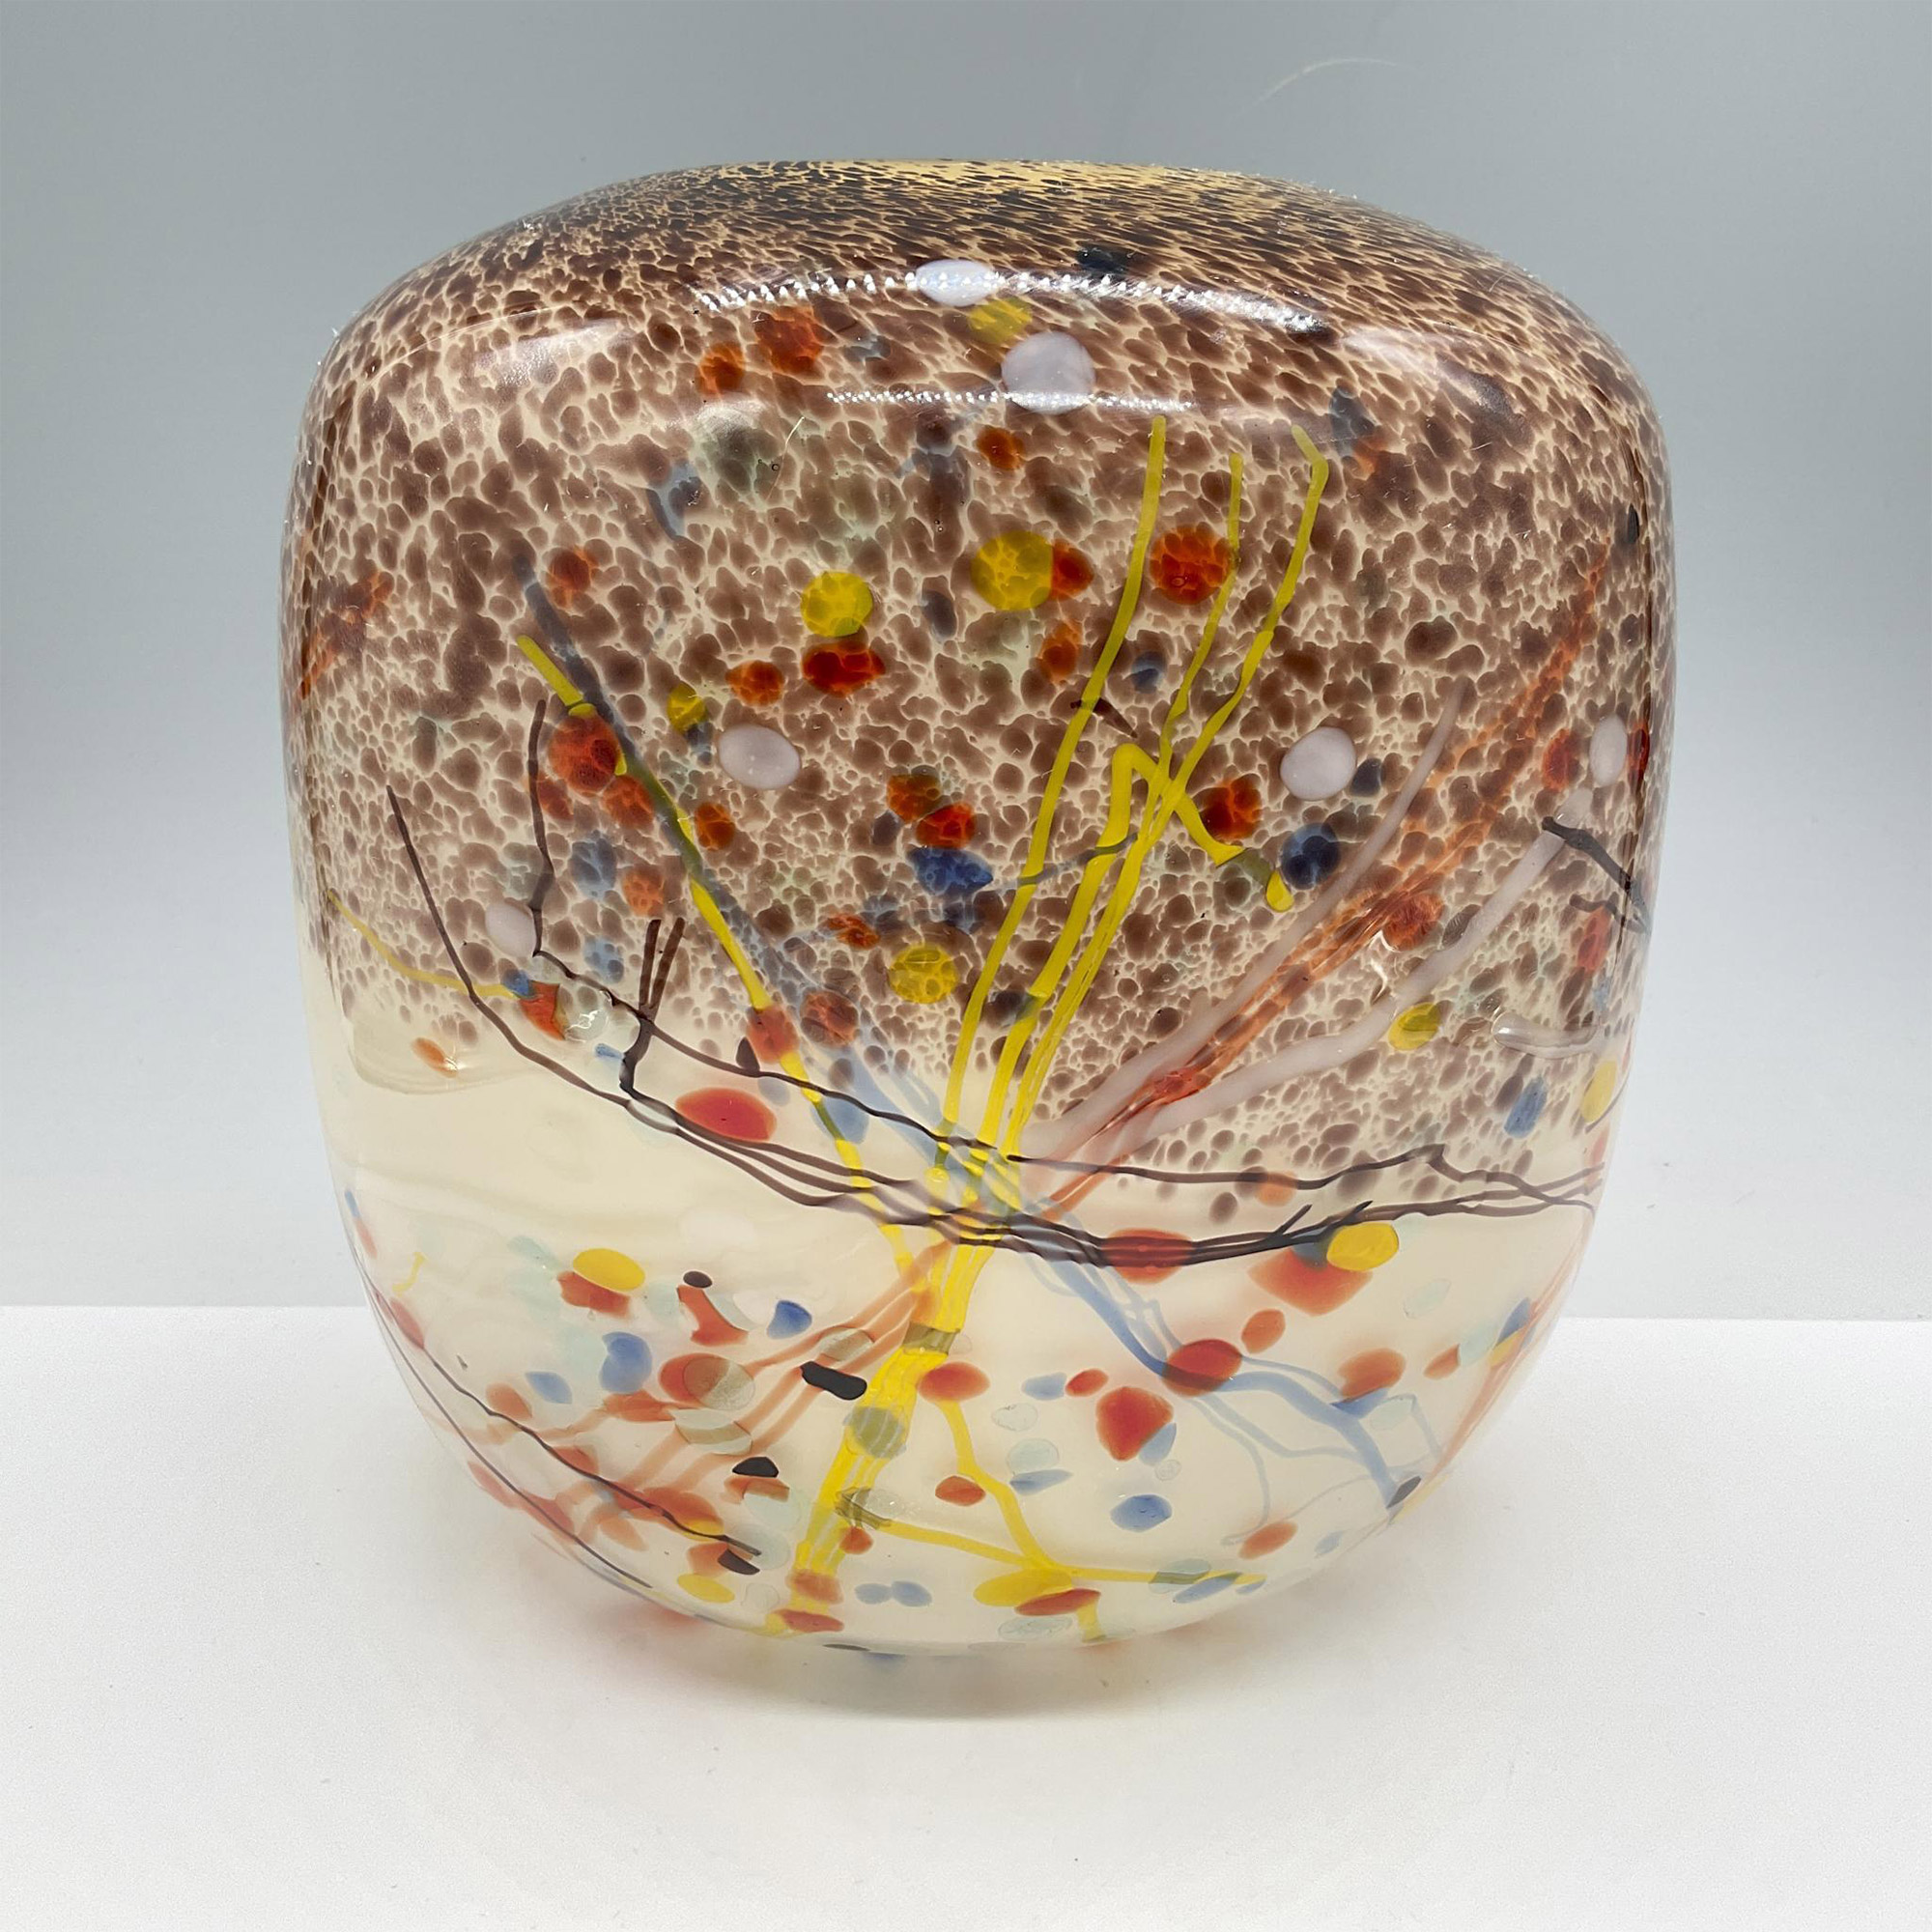 Modern Art Glass Vase, Speckled Pattern - Image 2 of 3